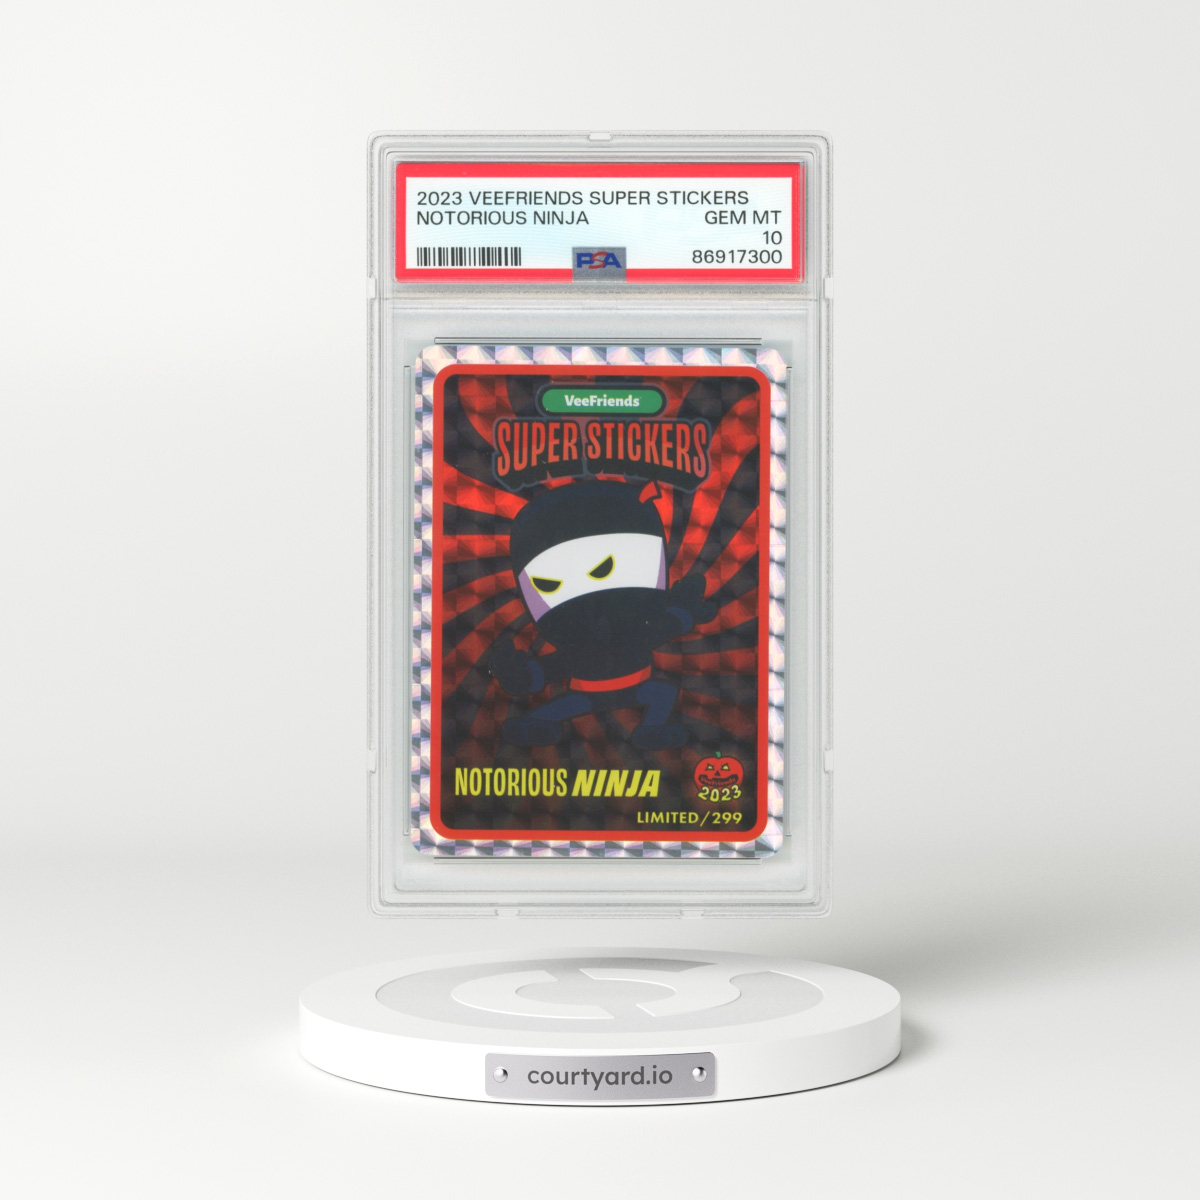 2023 Veefriends Super Stickers Notorious Ninja (PSA 10 GEM MINT)